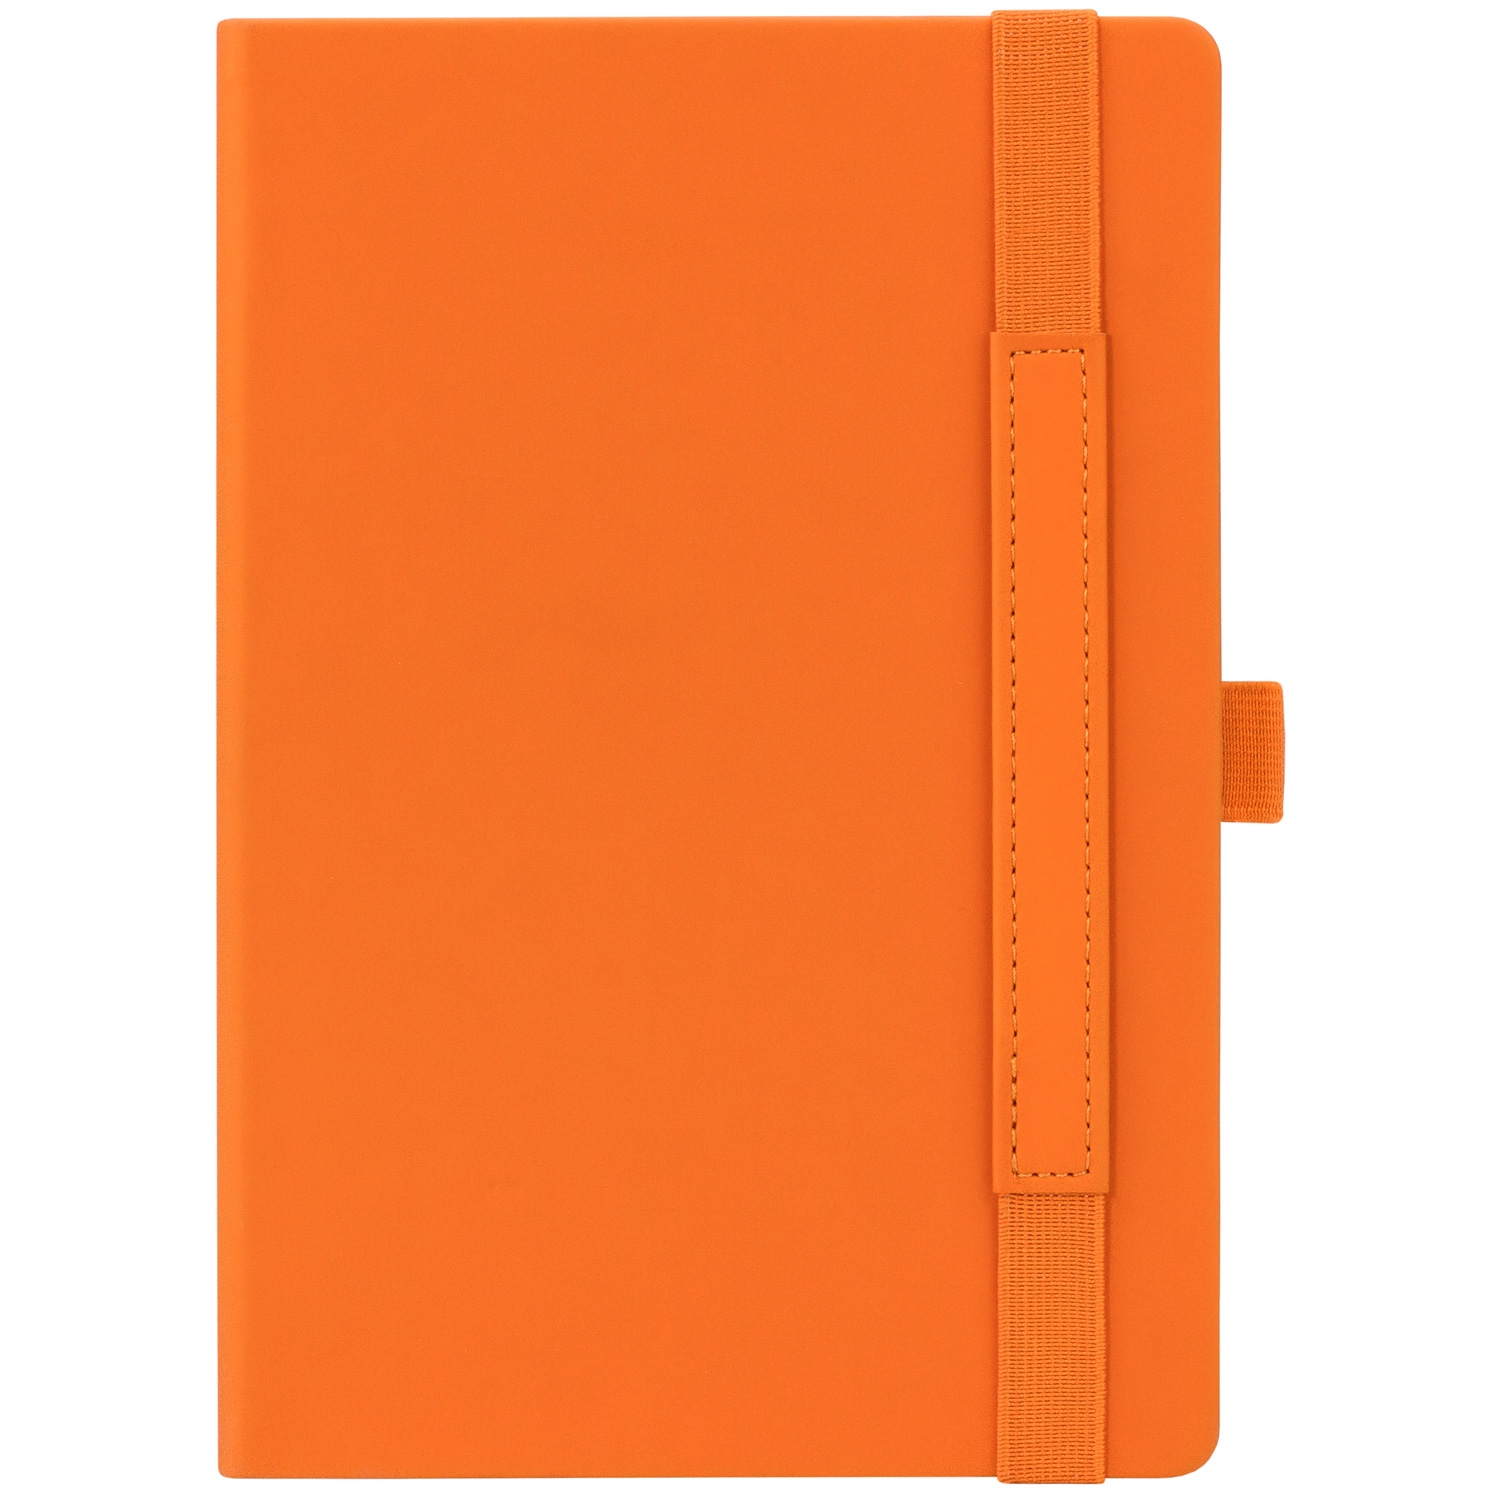 Ежедневник Alpha недатированный, оранжевый/коричневый, оранжевый